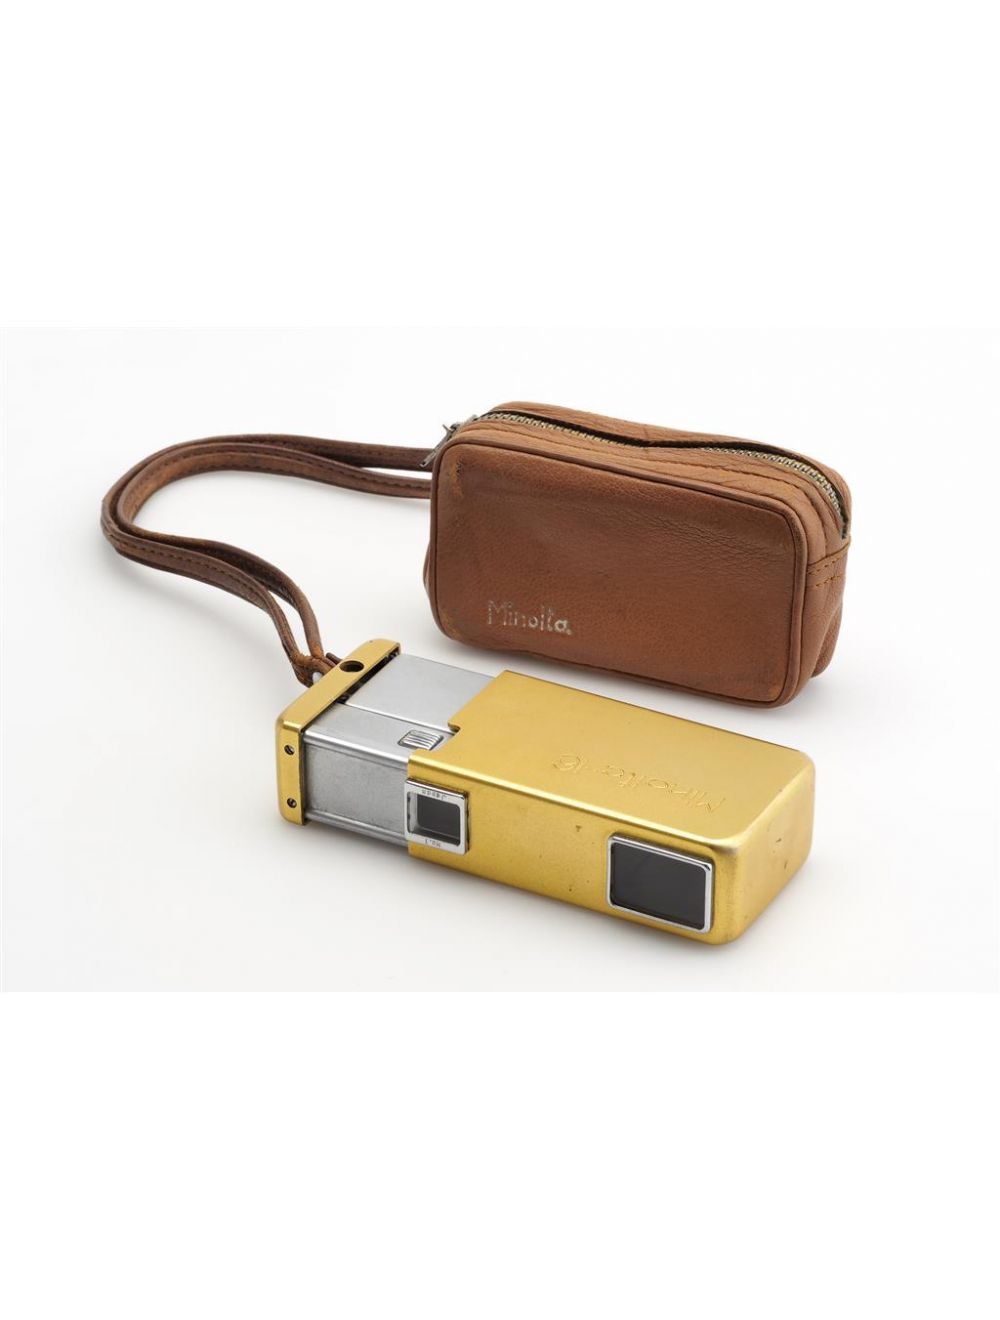 カメラ フィルムカメラ Minolta 16 Gold w. Case #200089 Chiyoda Kogaku Japan Spy Cam